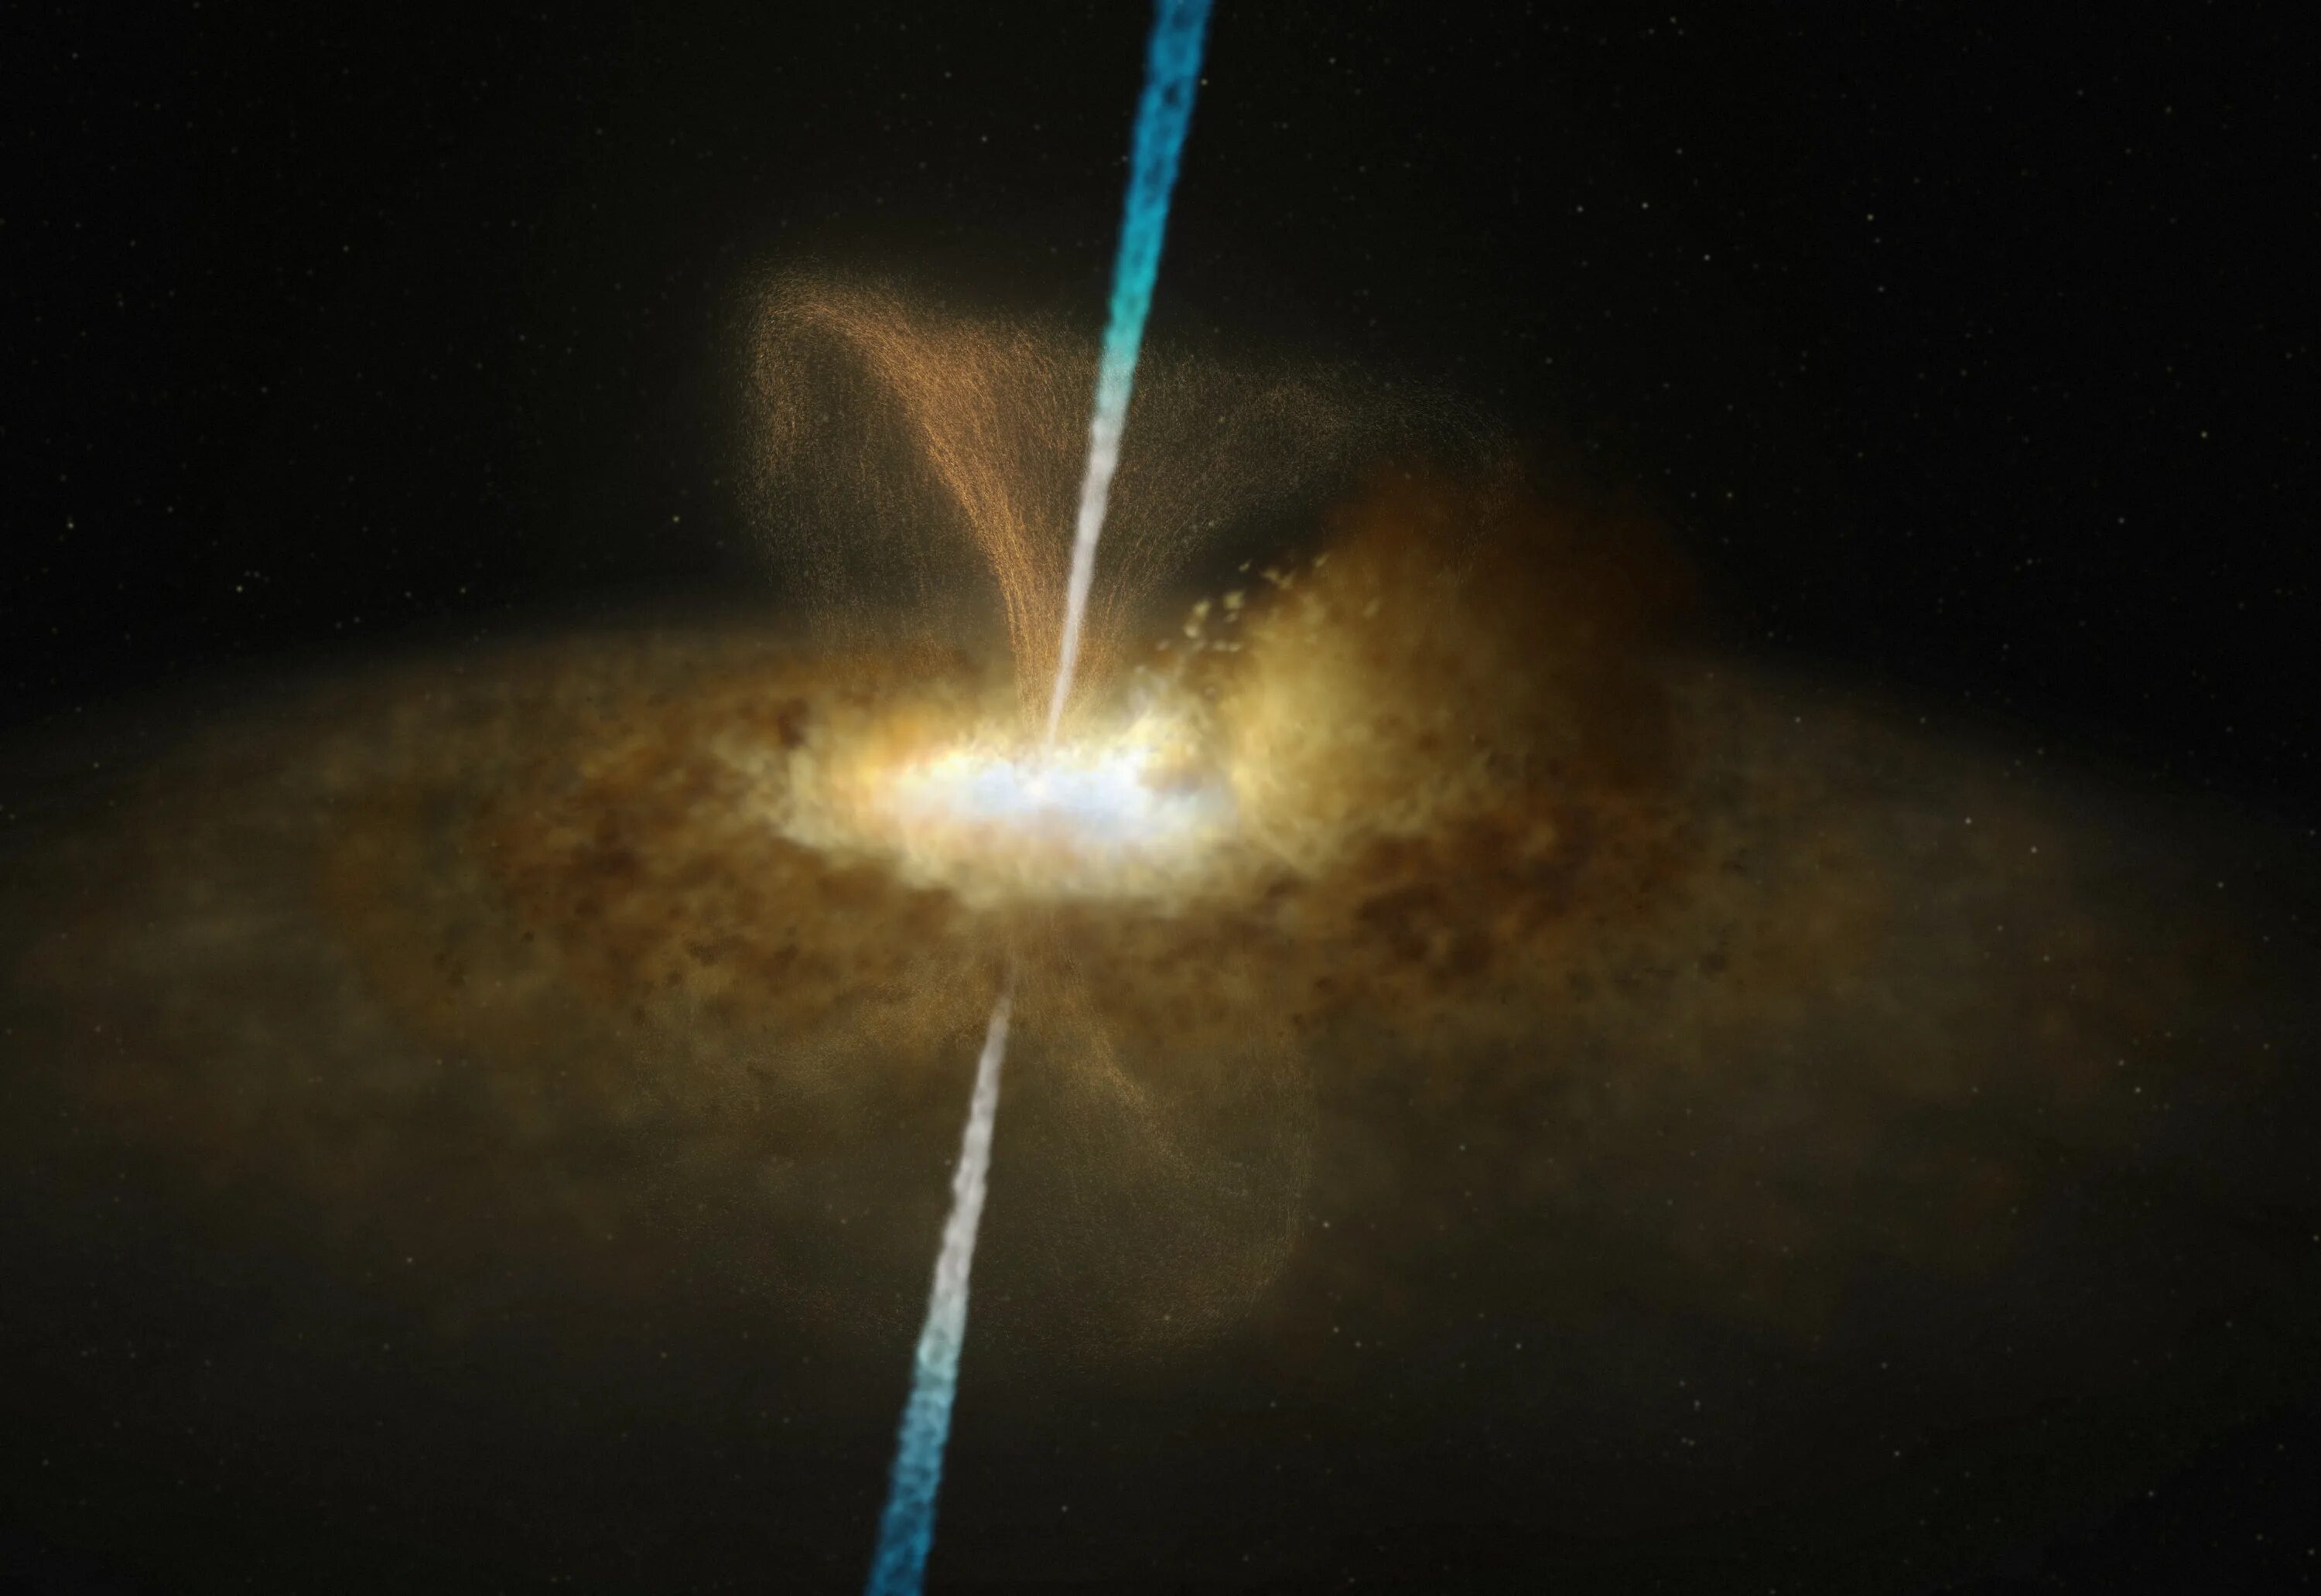 Черные дыры в ядрах галактик. Черная дыра в центре Галактики м87. Сверхмассивная чёрная дыра в центре Галактики м87. Галактика Мессье 77. Черная дыра m87 2022.